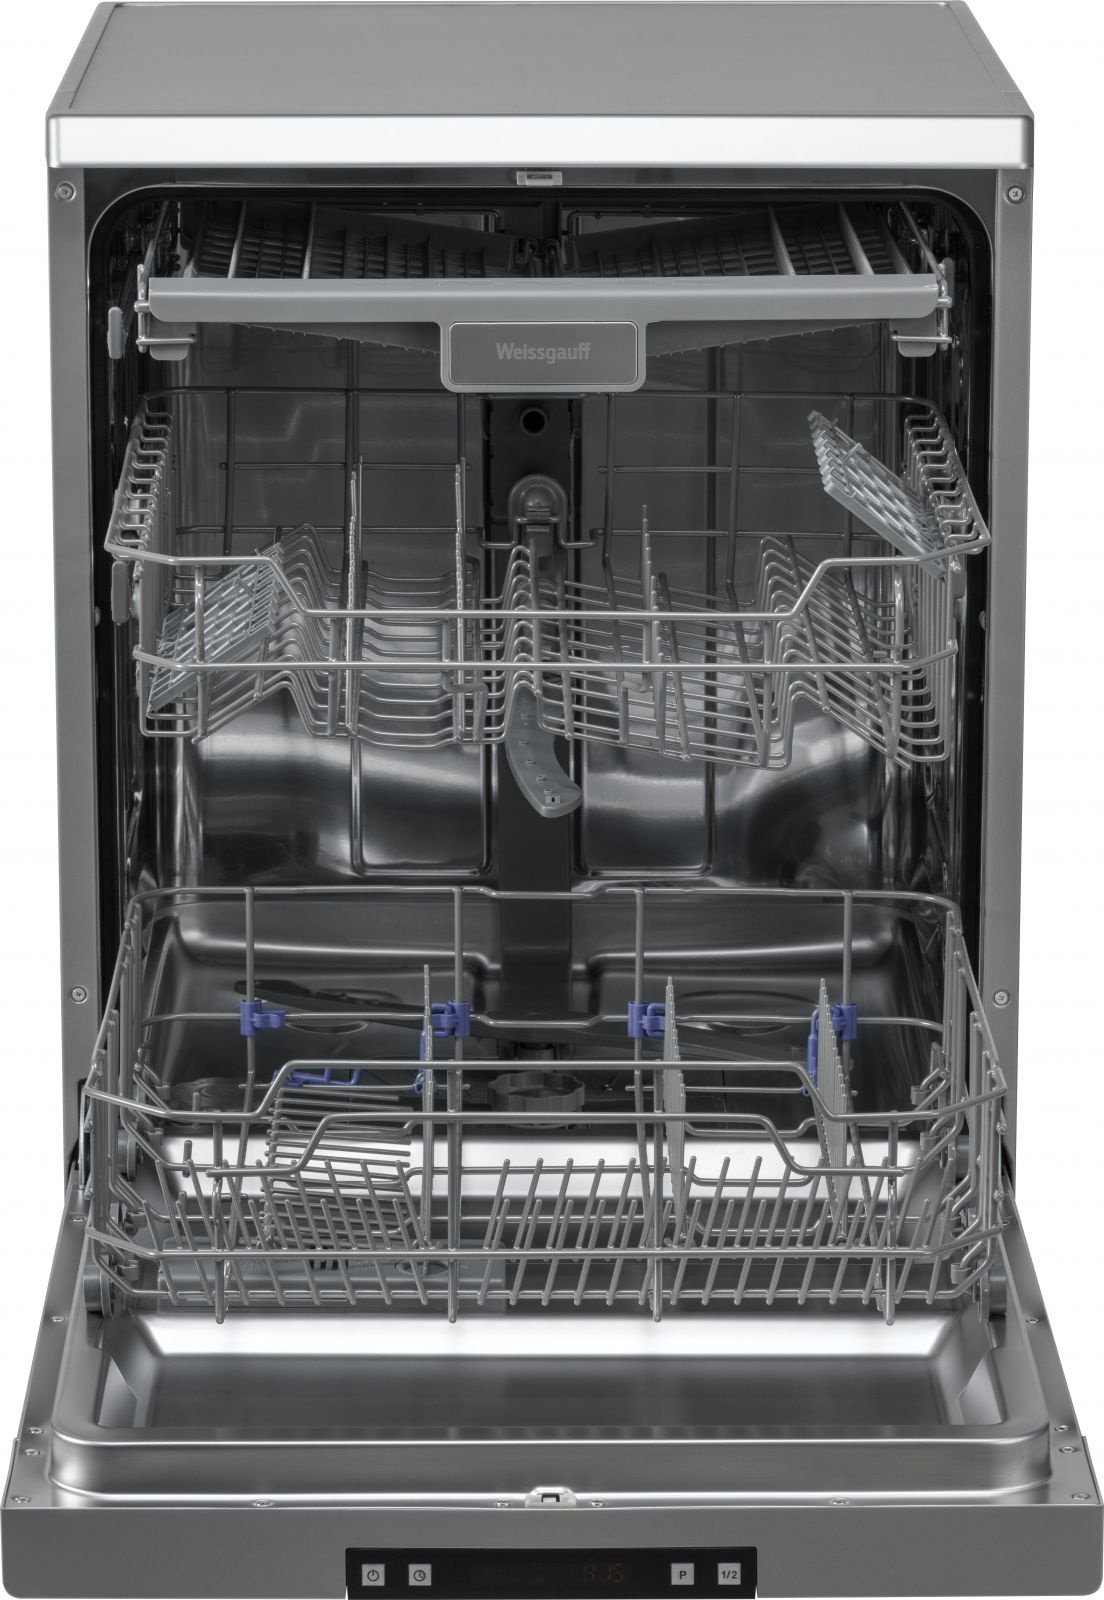 Посудомоечная машина Weissgauff DW 6015 серебристый (полноразмерная)